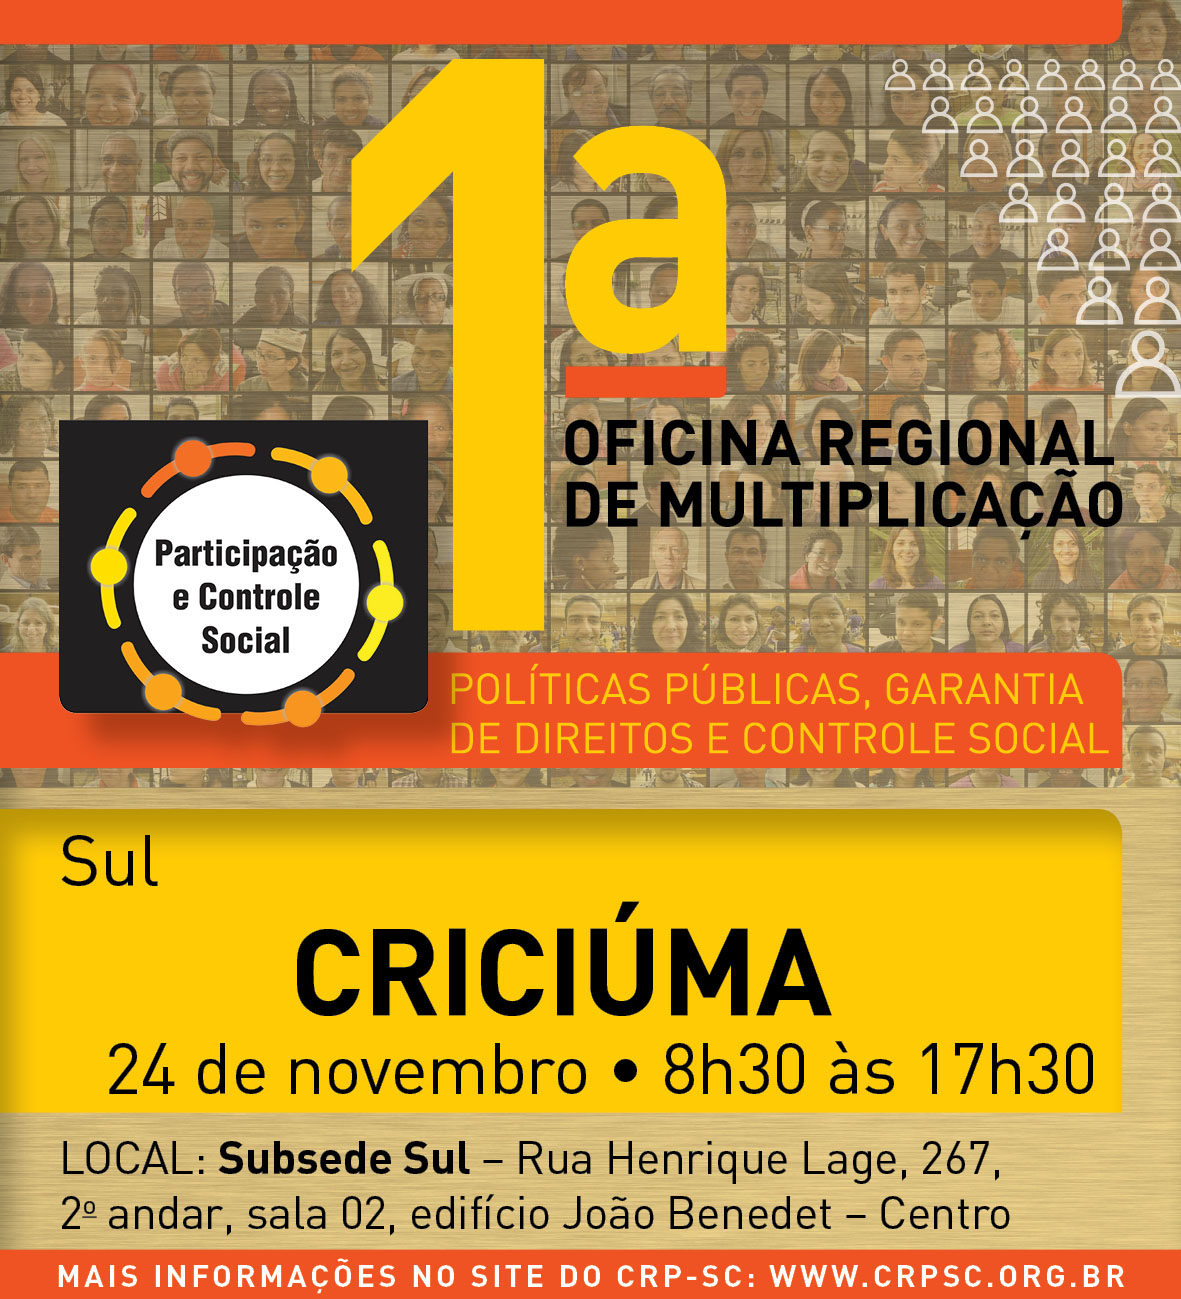 Nesta sexta-feira, em Criciúma, participe da 1ª OFICINA REGIONAL DE MULTIPLICAÇÃO 